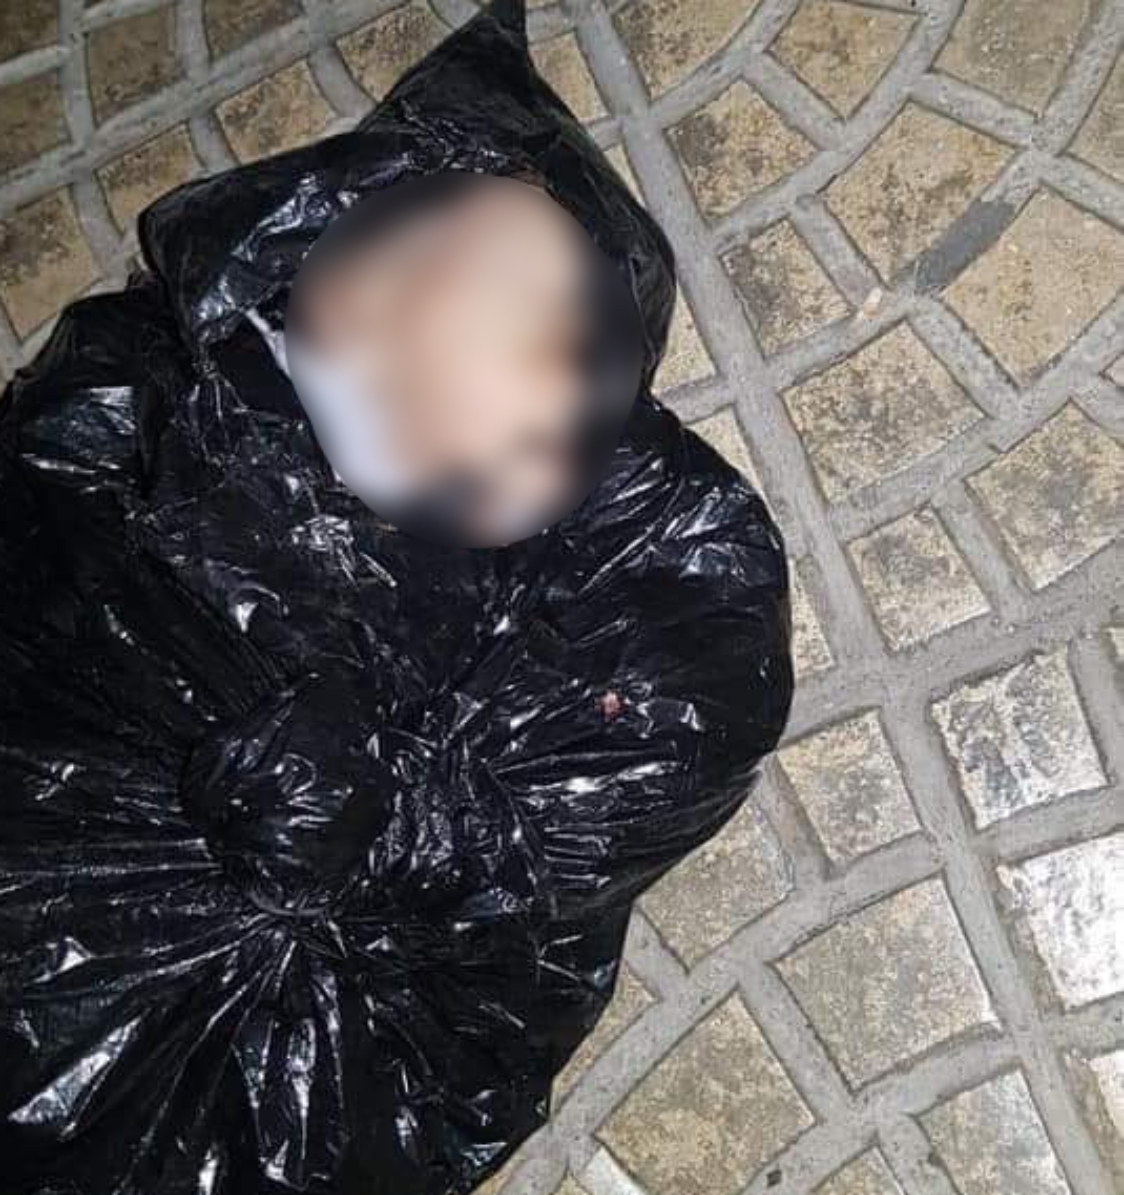 بالصورة/ العثور على جثة رضيع حديث الولادة بكيس نفايات بالقرب من مسجد الحسنين (ع) في حارة حريك